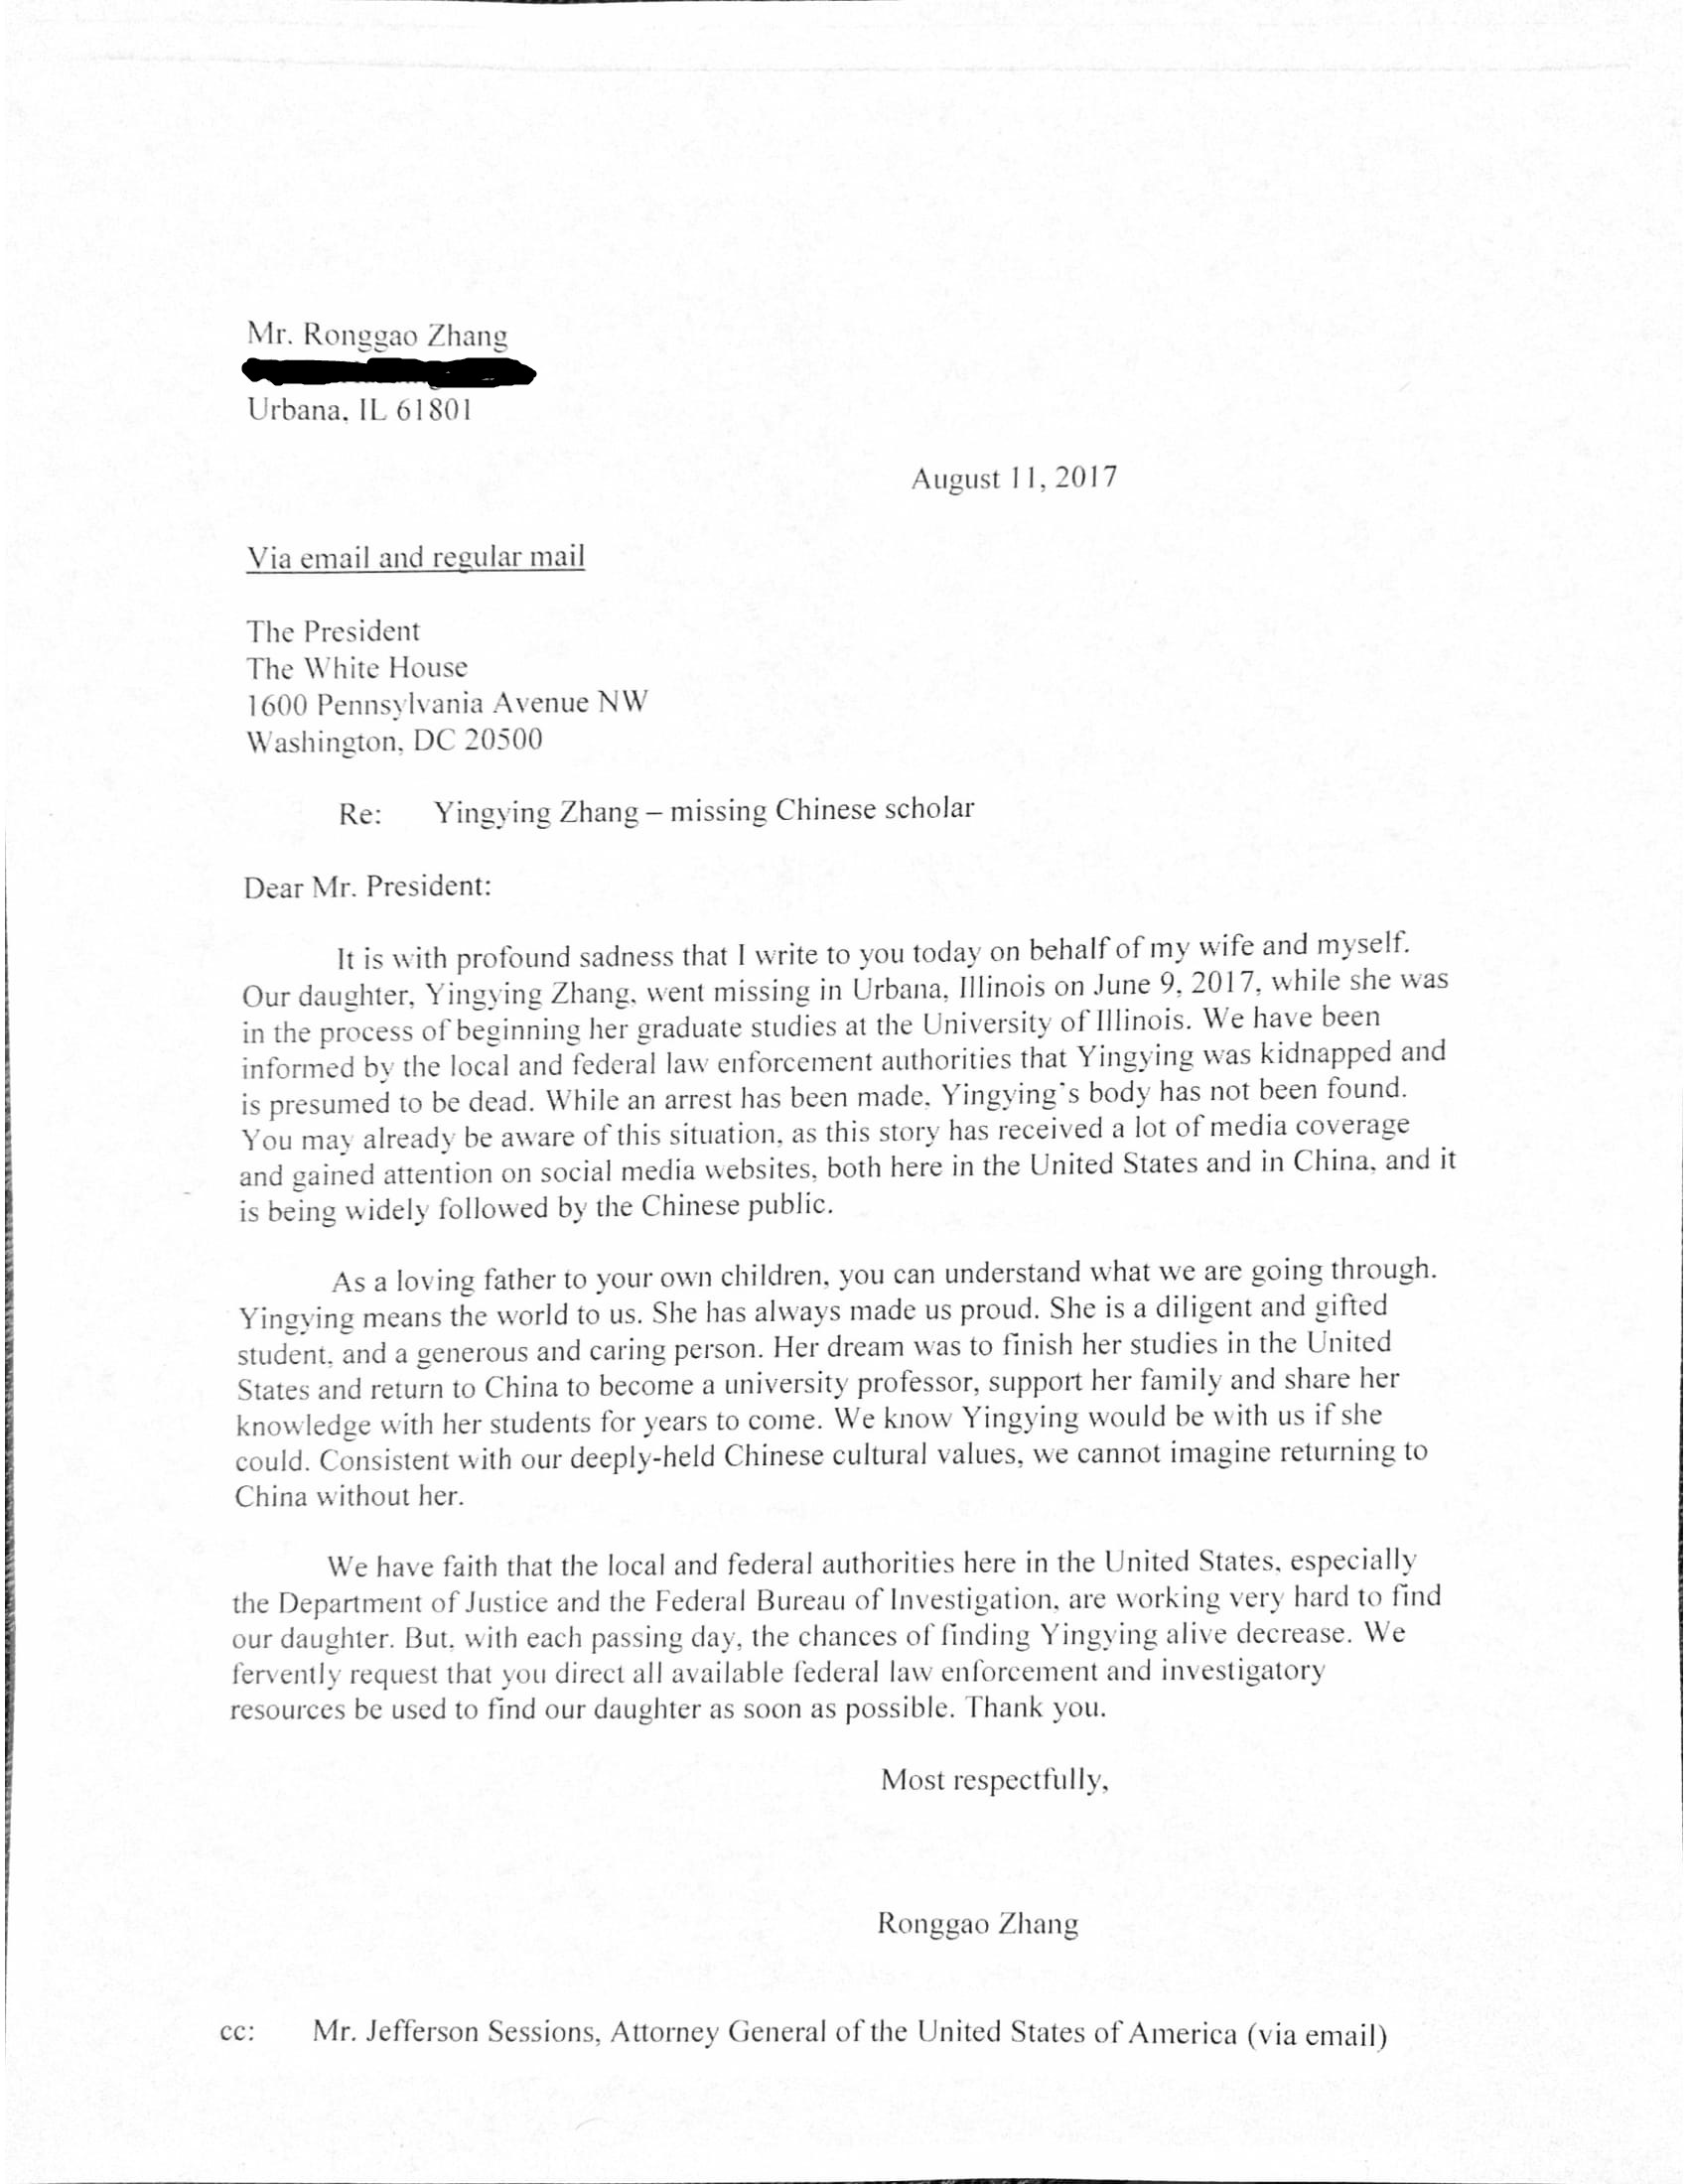 章莹颖家人提交给川普总统的请愿信，图为信件英文。（章莹颖家人新闻发布会现场提供）